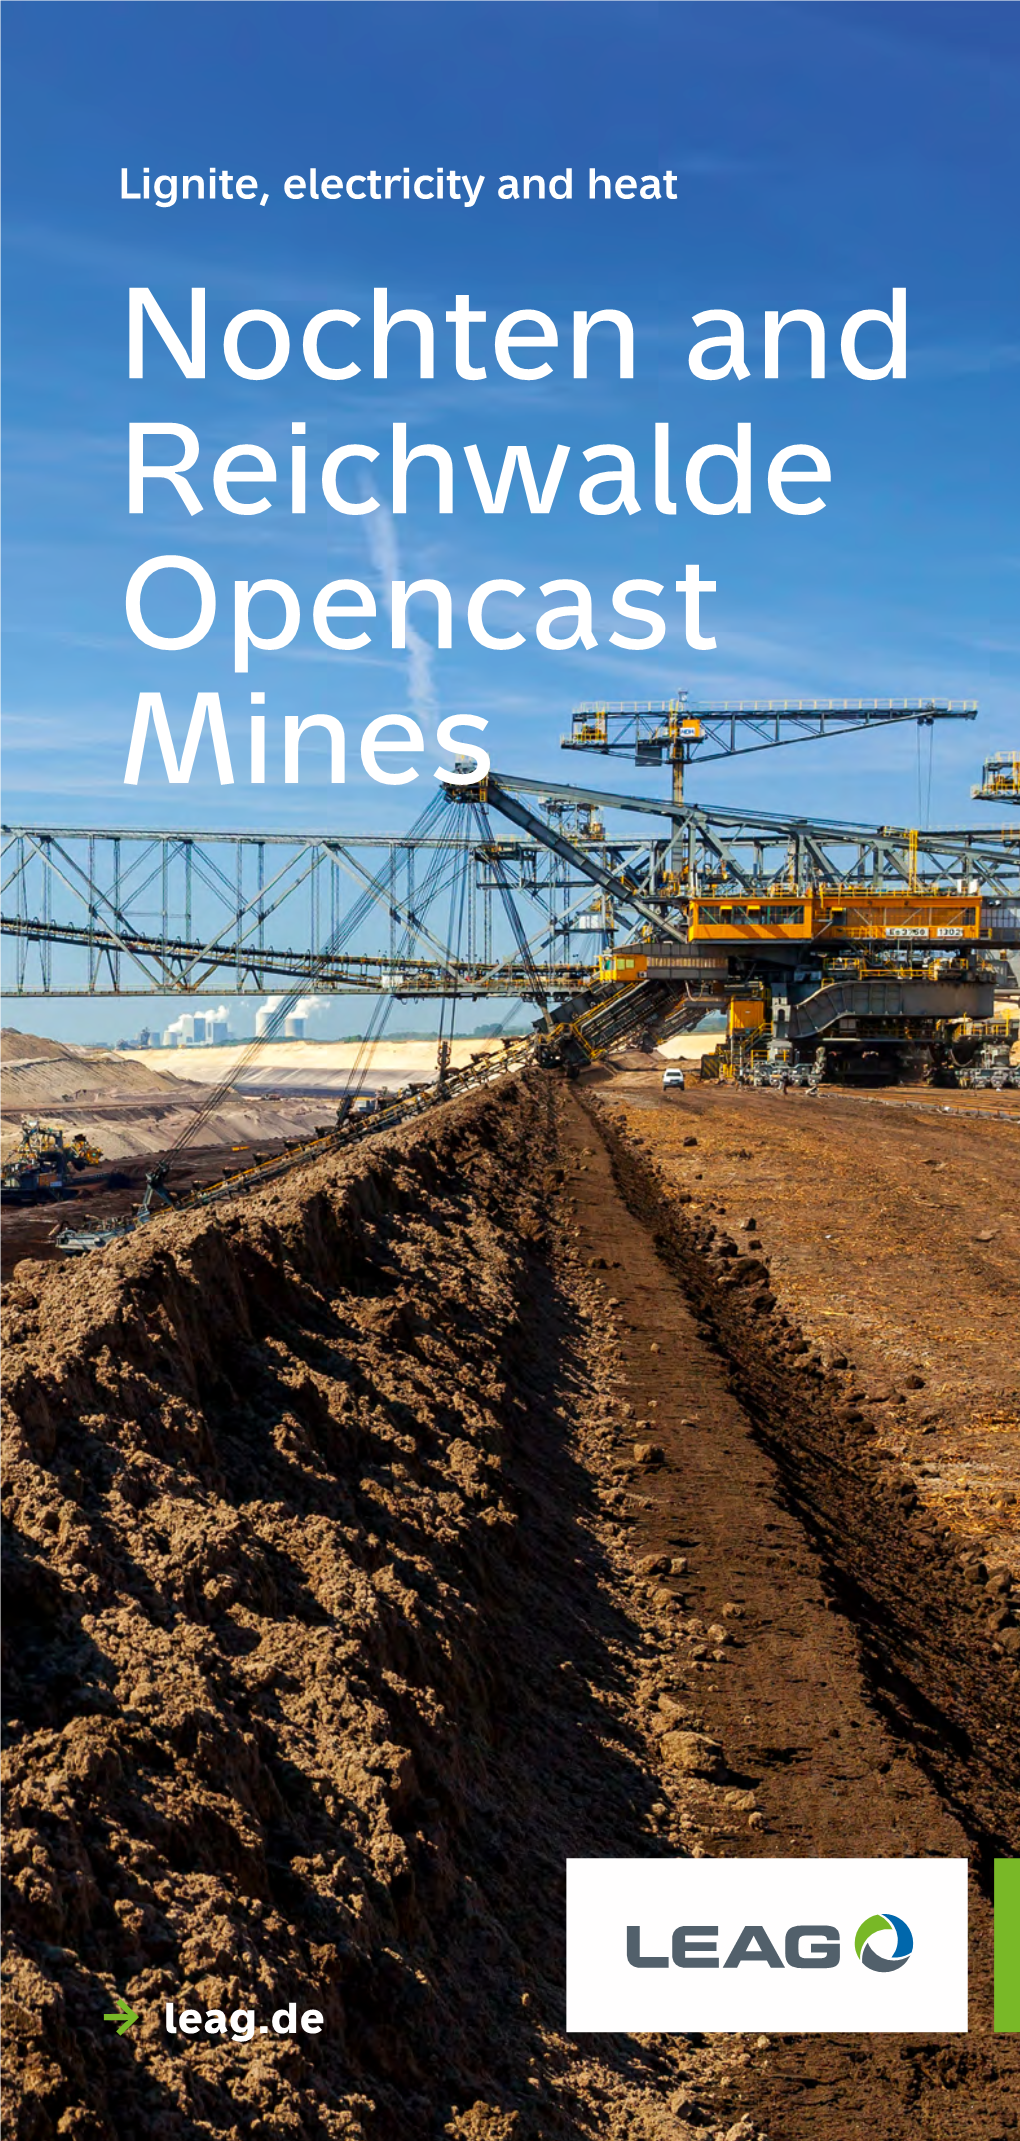 Nochten and Reichwalde Opencast Mines